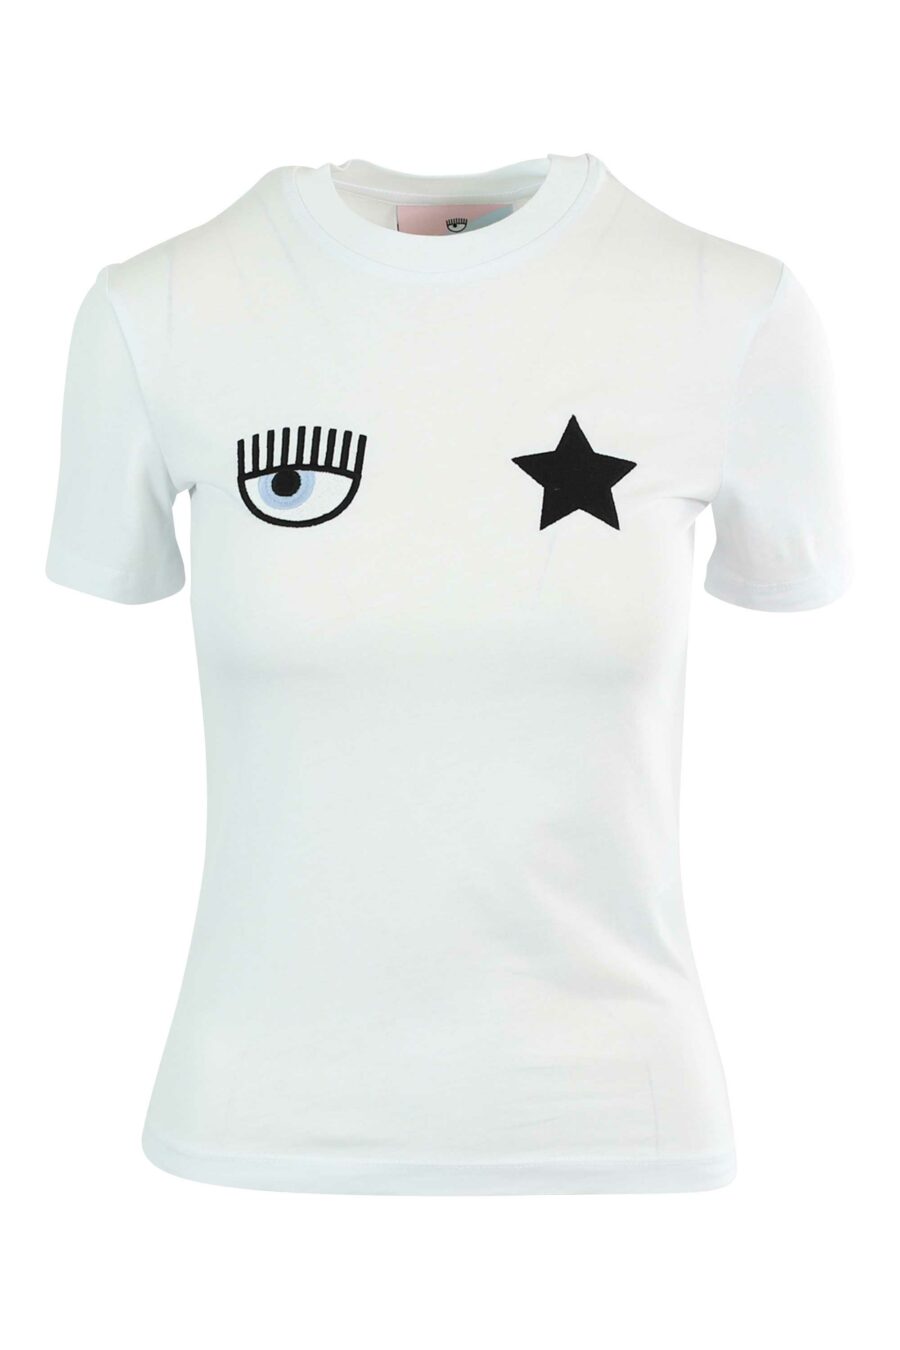 Camiseta blanca con logo ojo y estrella - 8052672416728